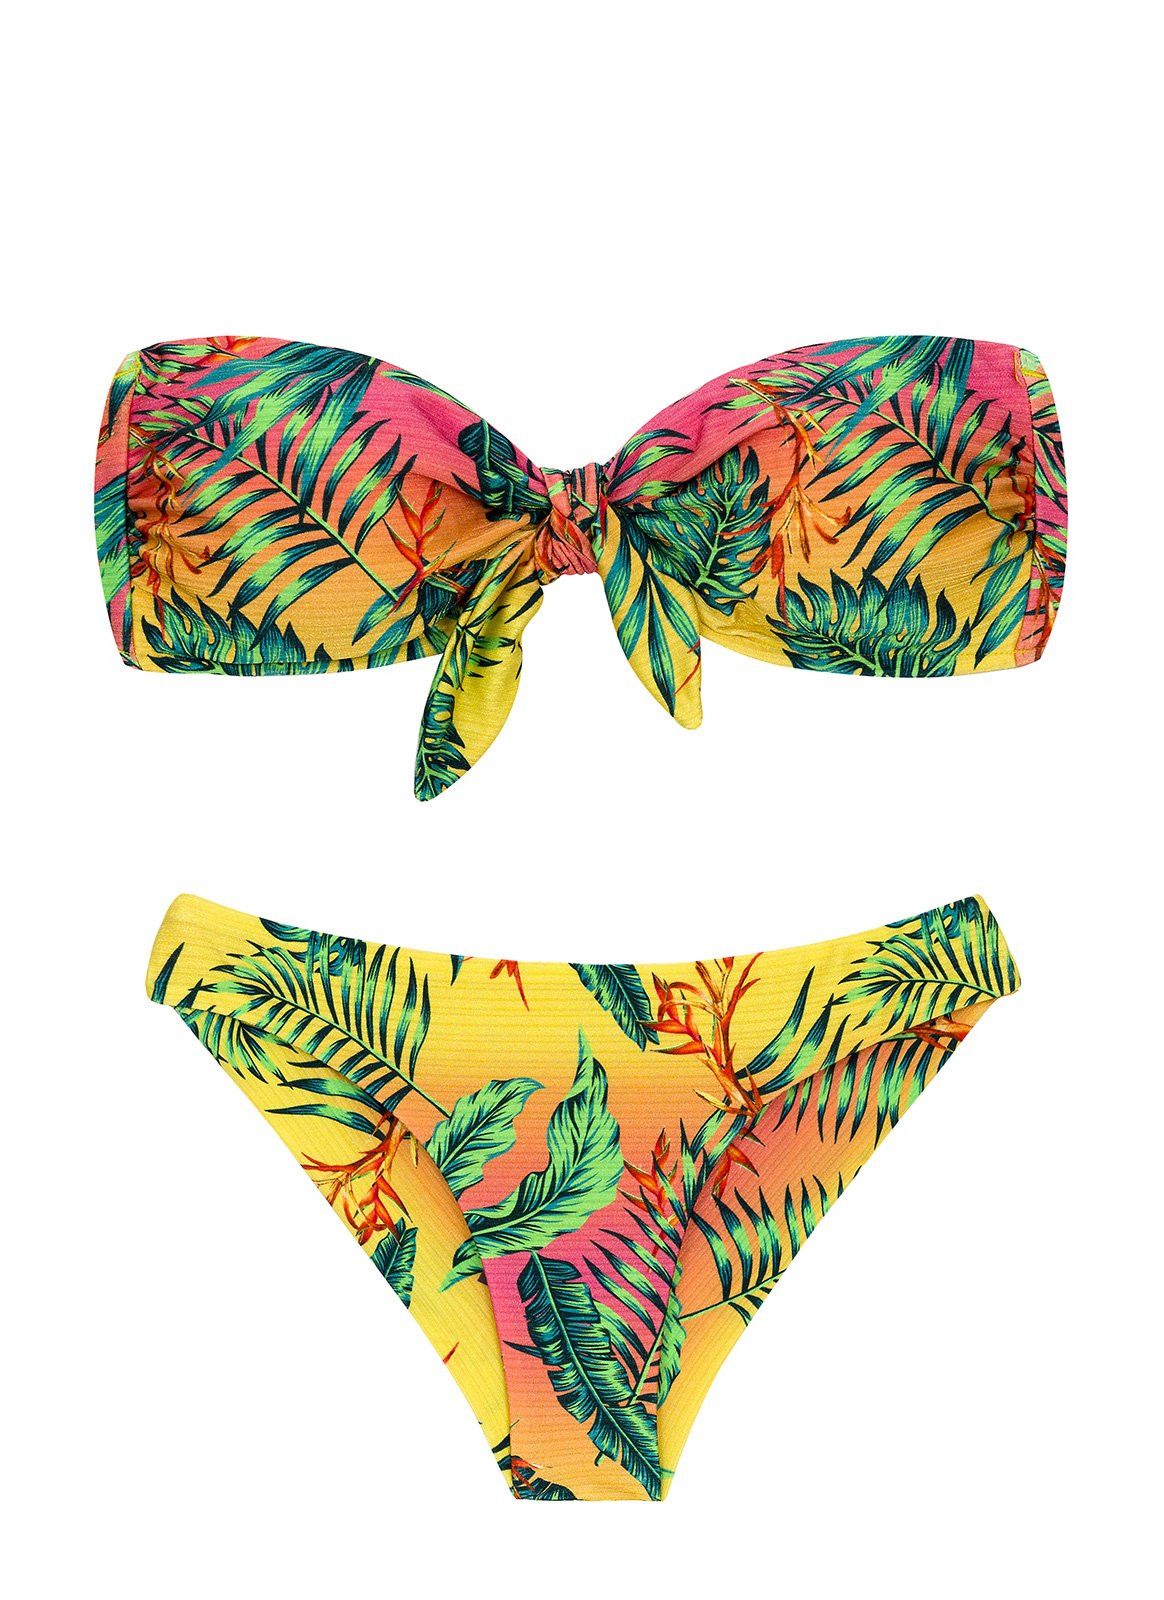 Tropical print bikini - uim-makassar.ac.id